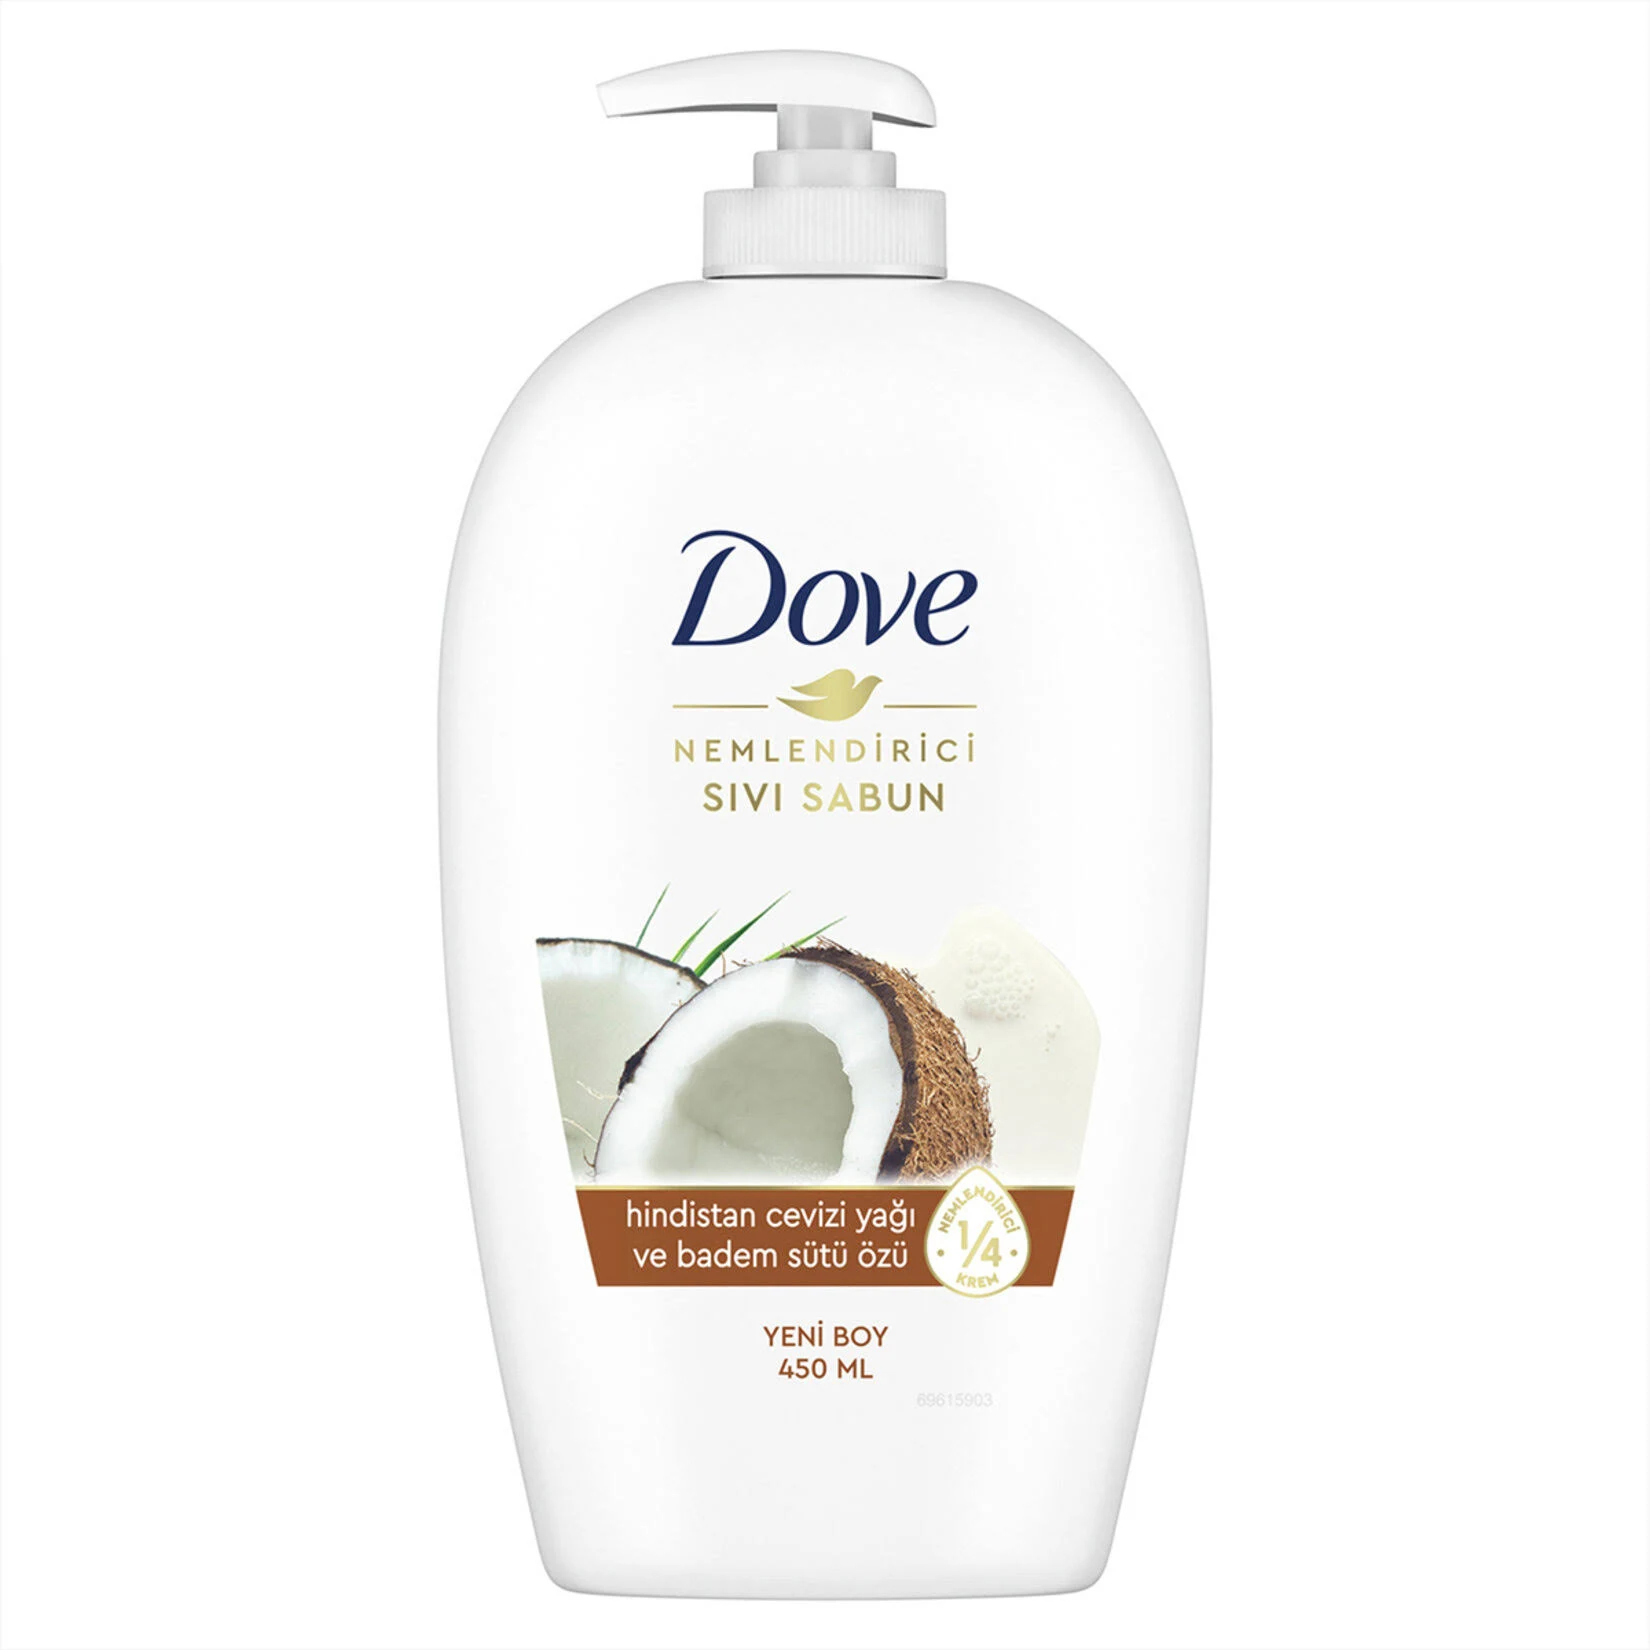 Dove - Dove Hindistan Cevizi Yağı Badem Sütü Özü Nemlendirici Sıvı Sabun 450 ml